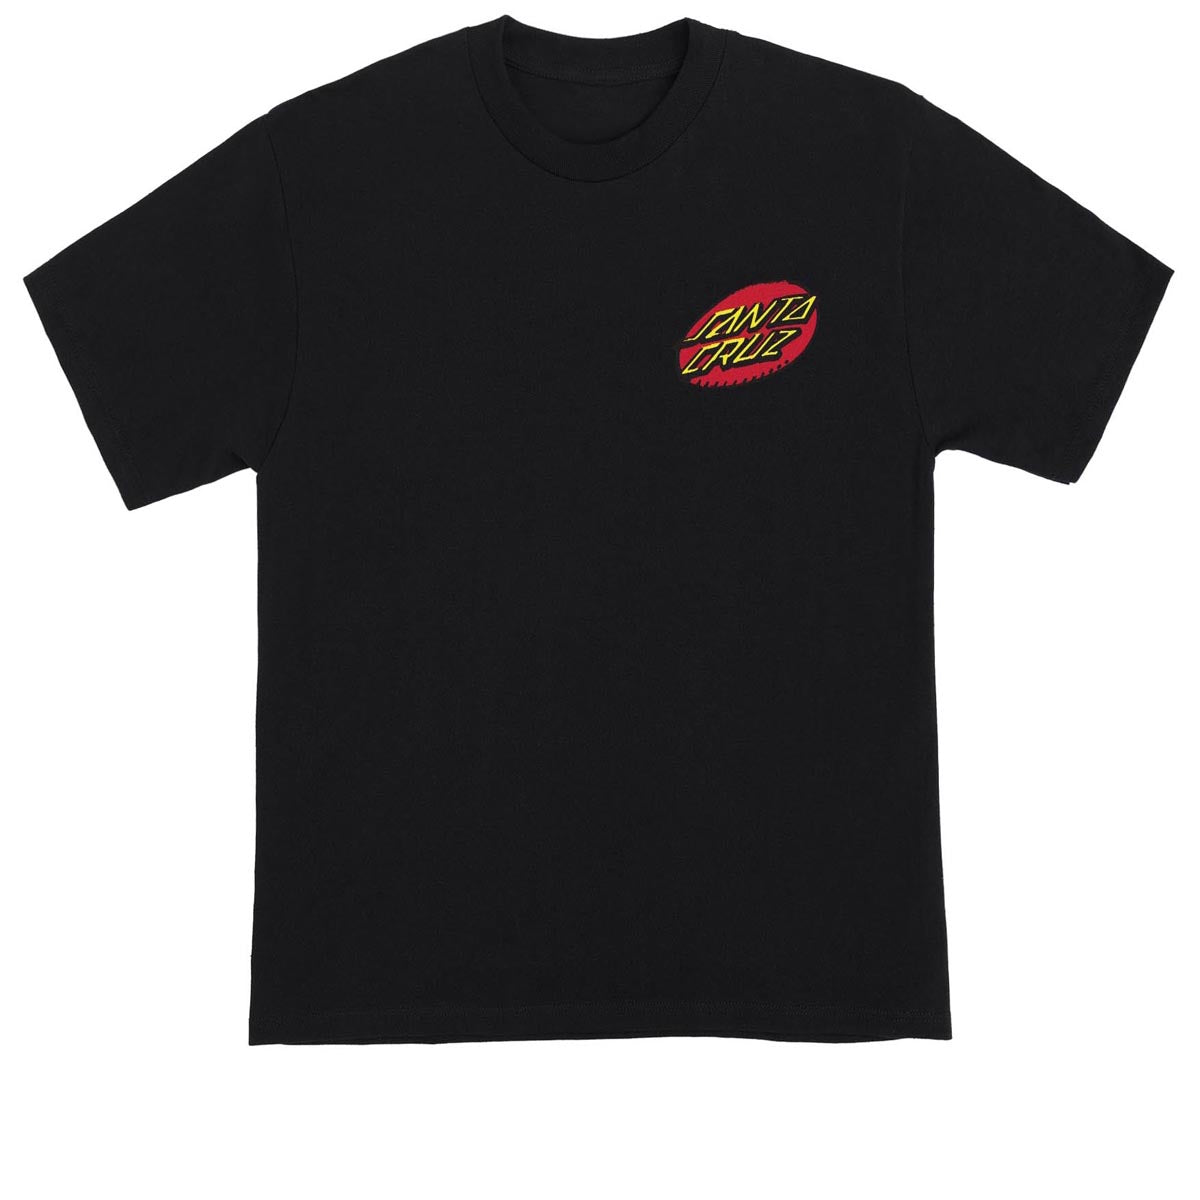 Santa Cruz Creep Dot T-Shirt - Black image 2